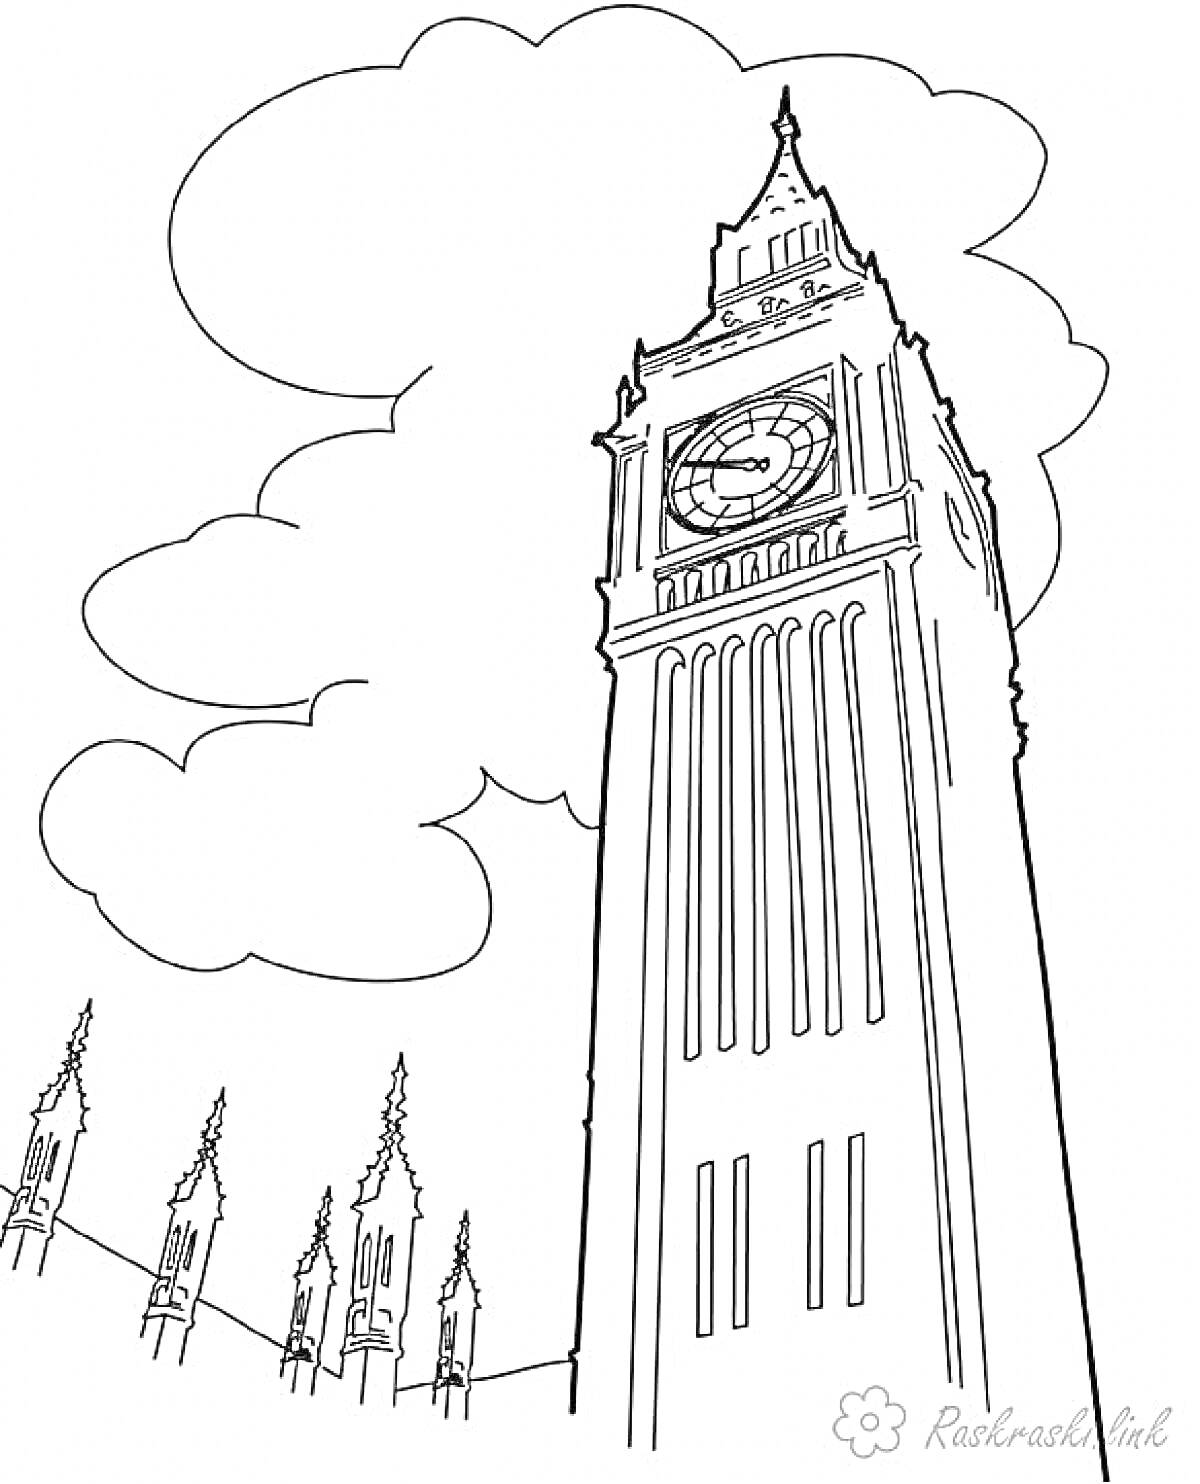 Раскраска Лондонский Биг-Бен с облаками и зданием парламента